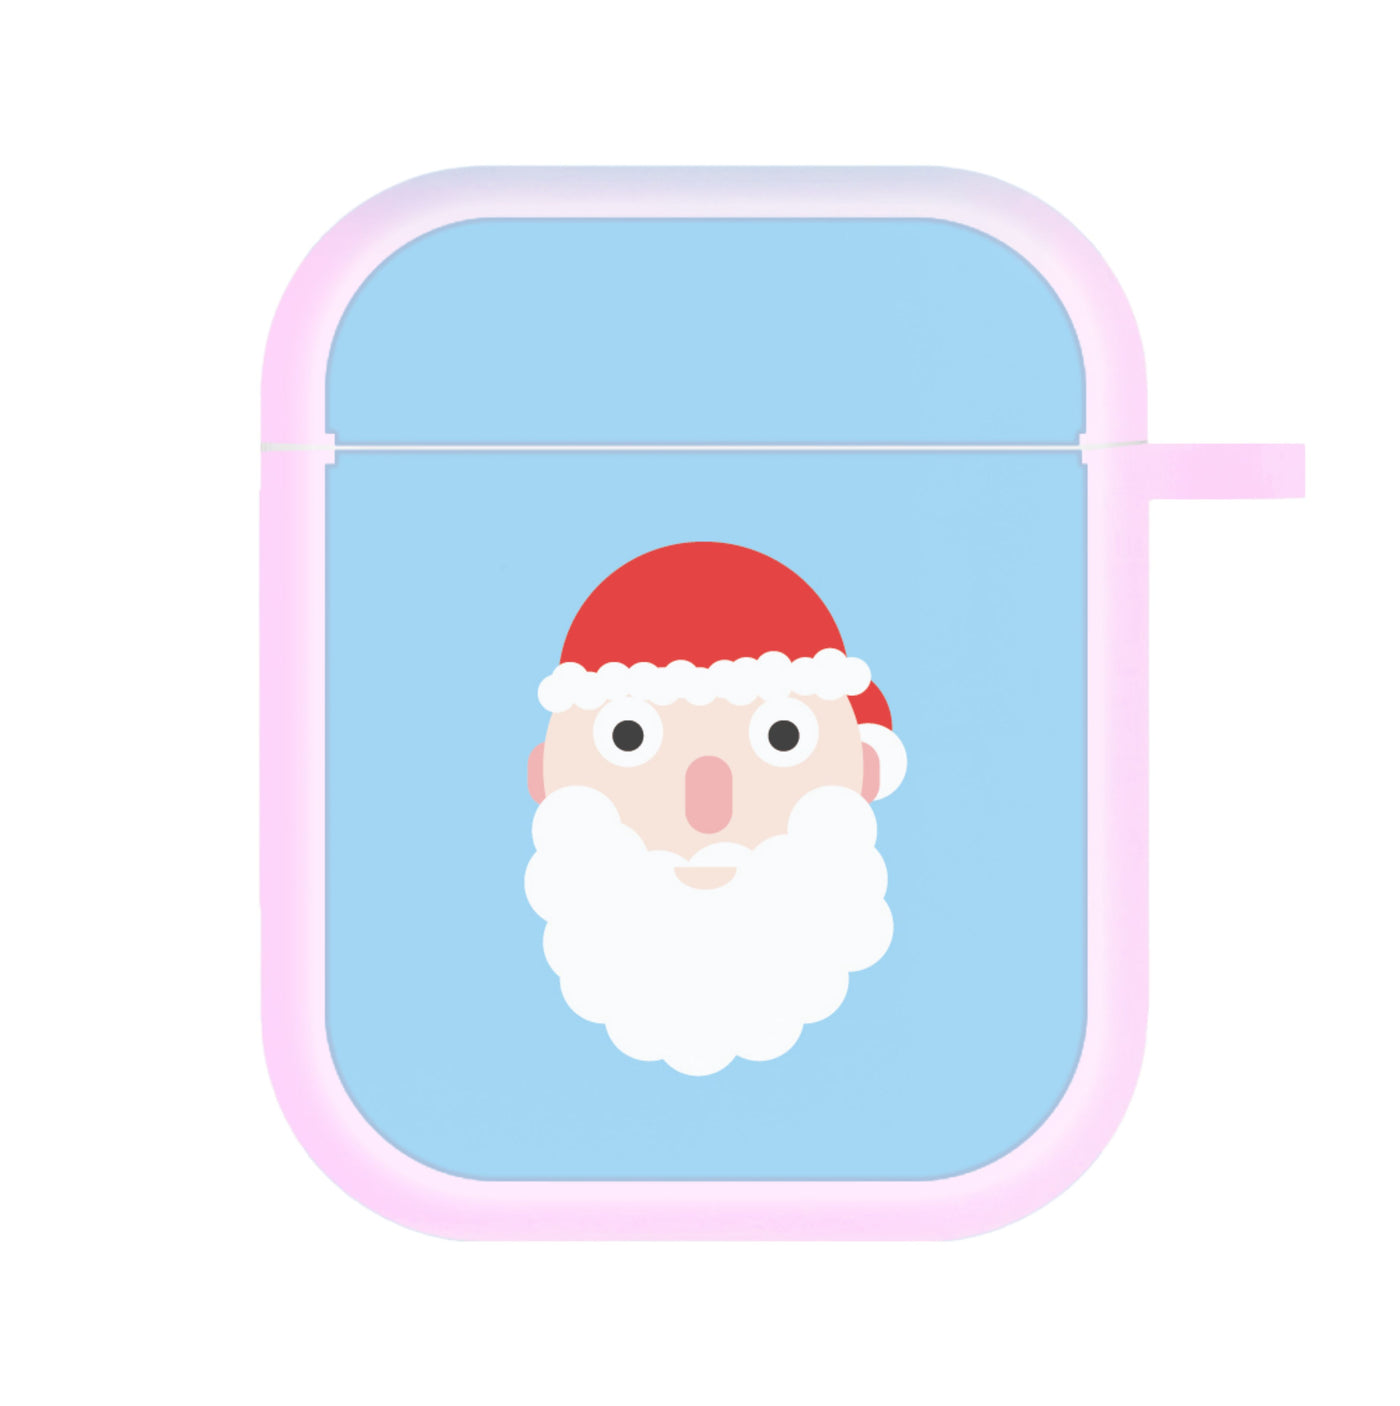 Santa's Face - Christmas AirPods Case